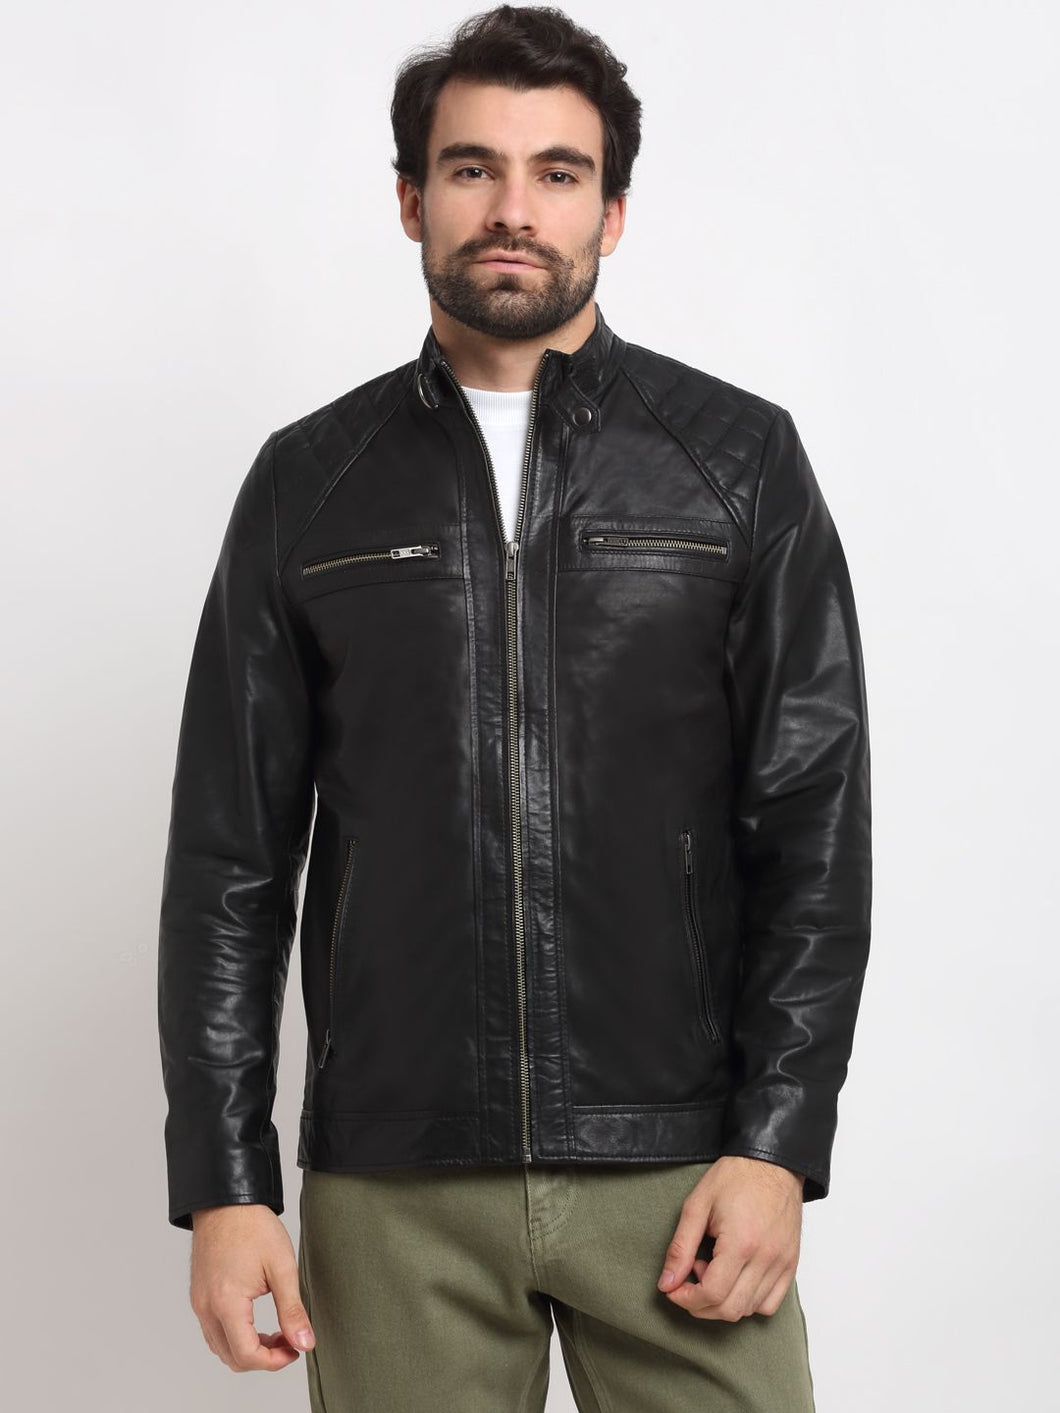 15 Black Leather Jacket Outfits to Copy this Season - Fashion Jackson